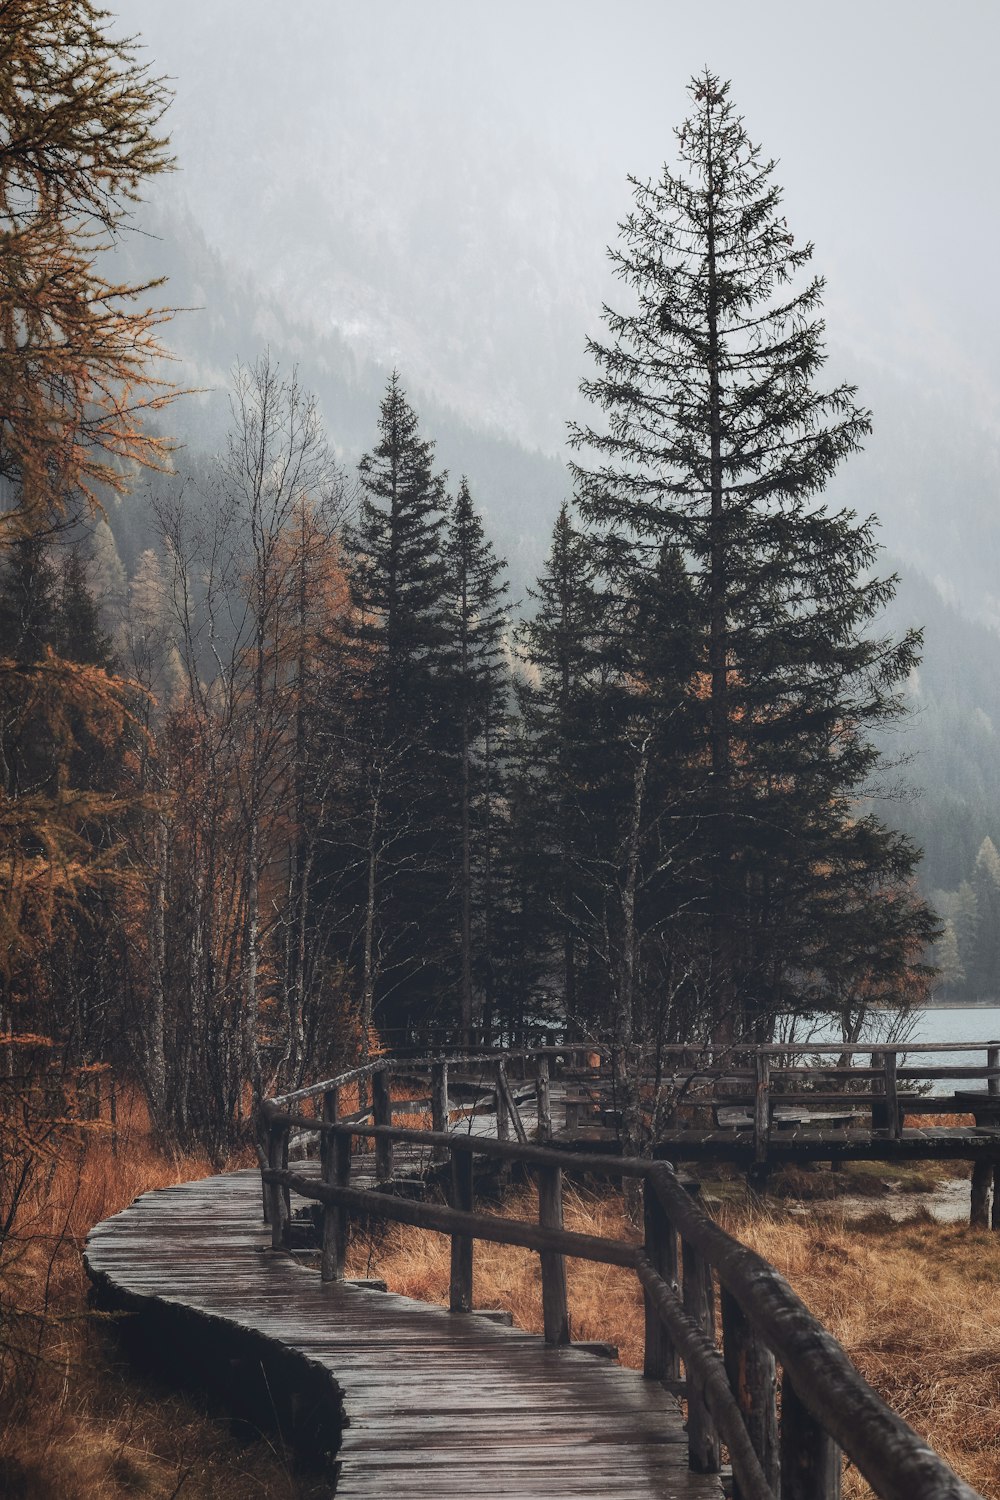 Camino de madera marrón con árboles en clima de niebla